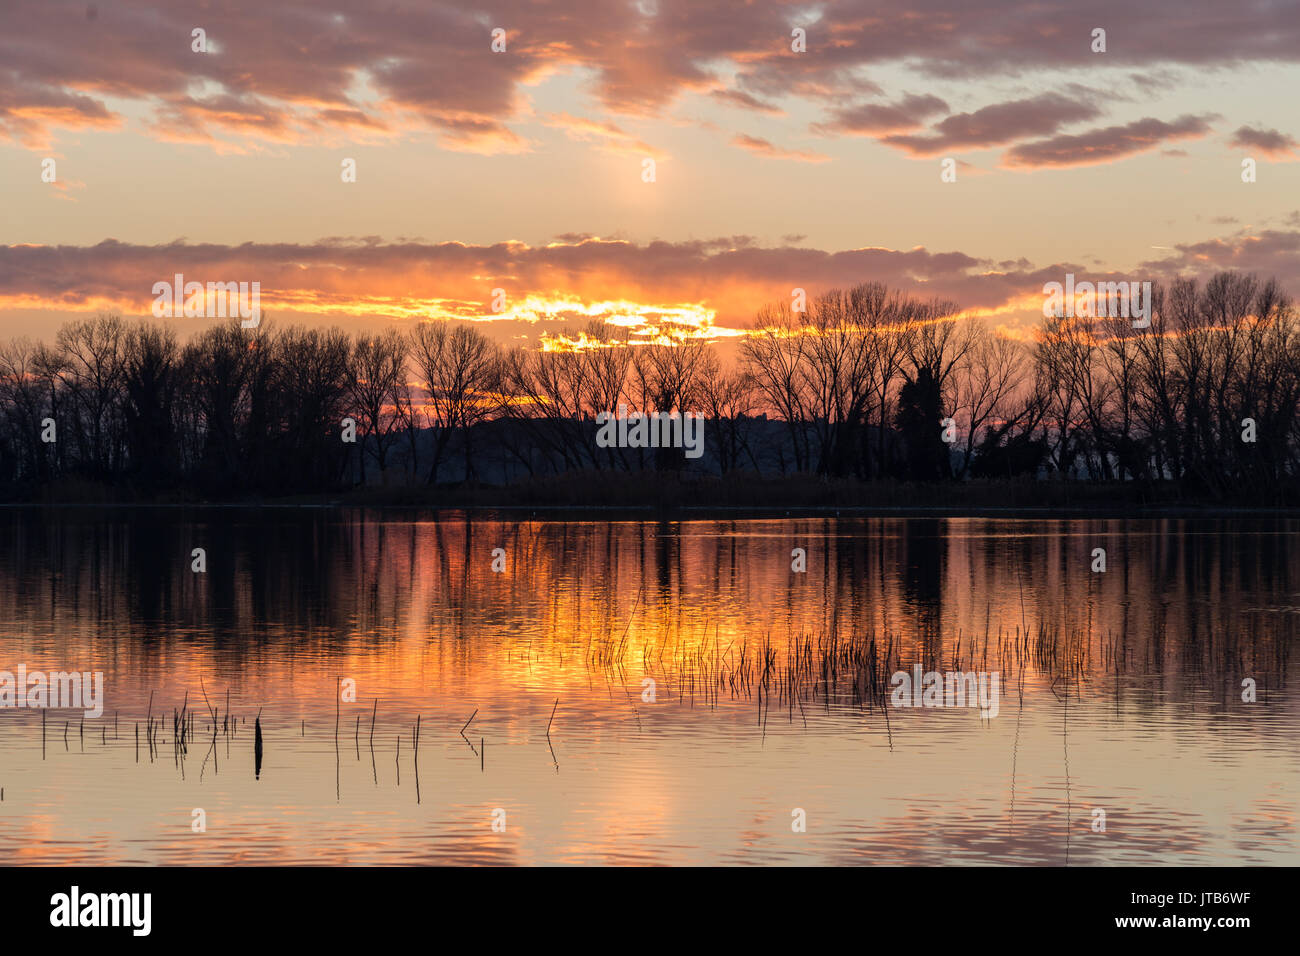 Sonnenuntergang am See, mit symmetrischen Spiegelungen der Bäume Silhouetten und Wolken auf dem Wasser Stockfoto